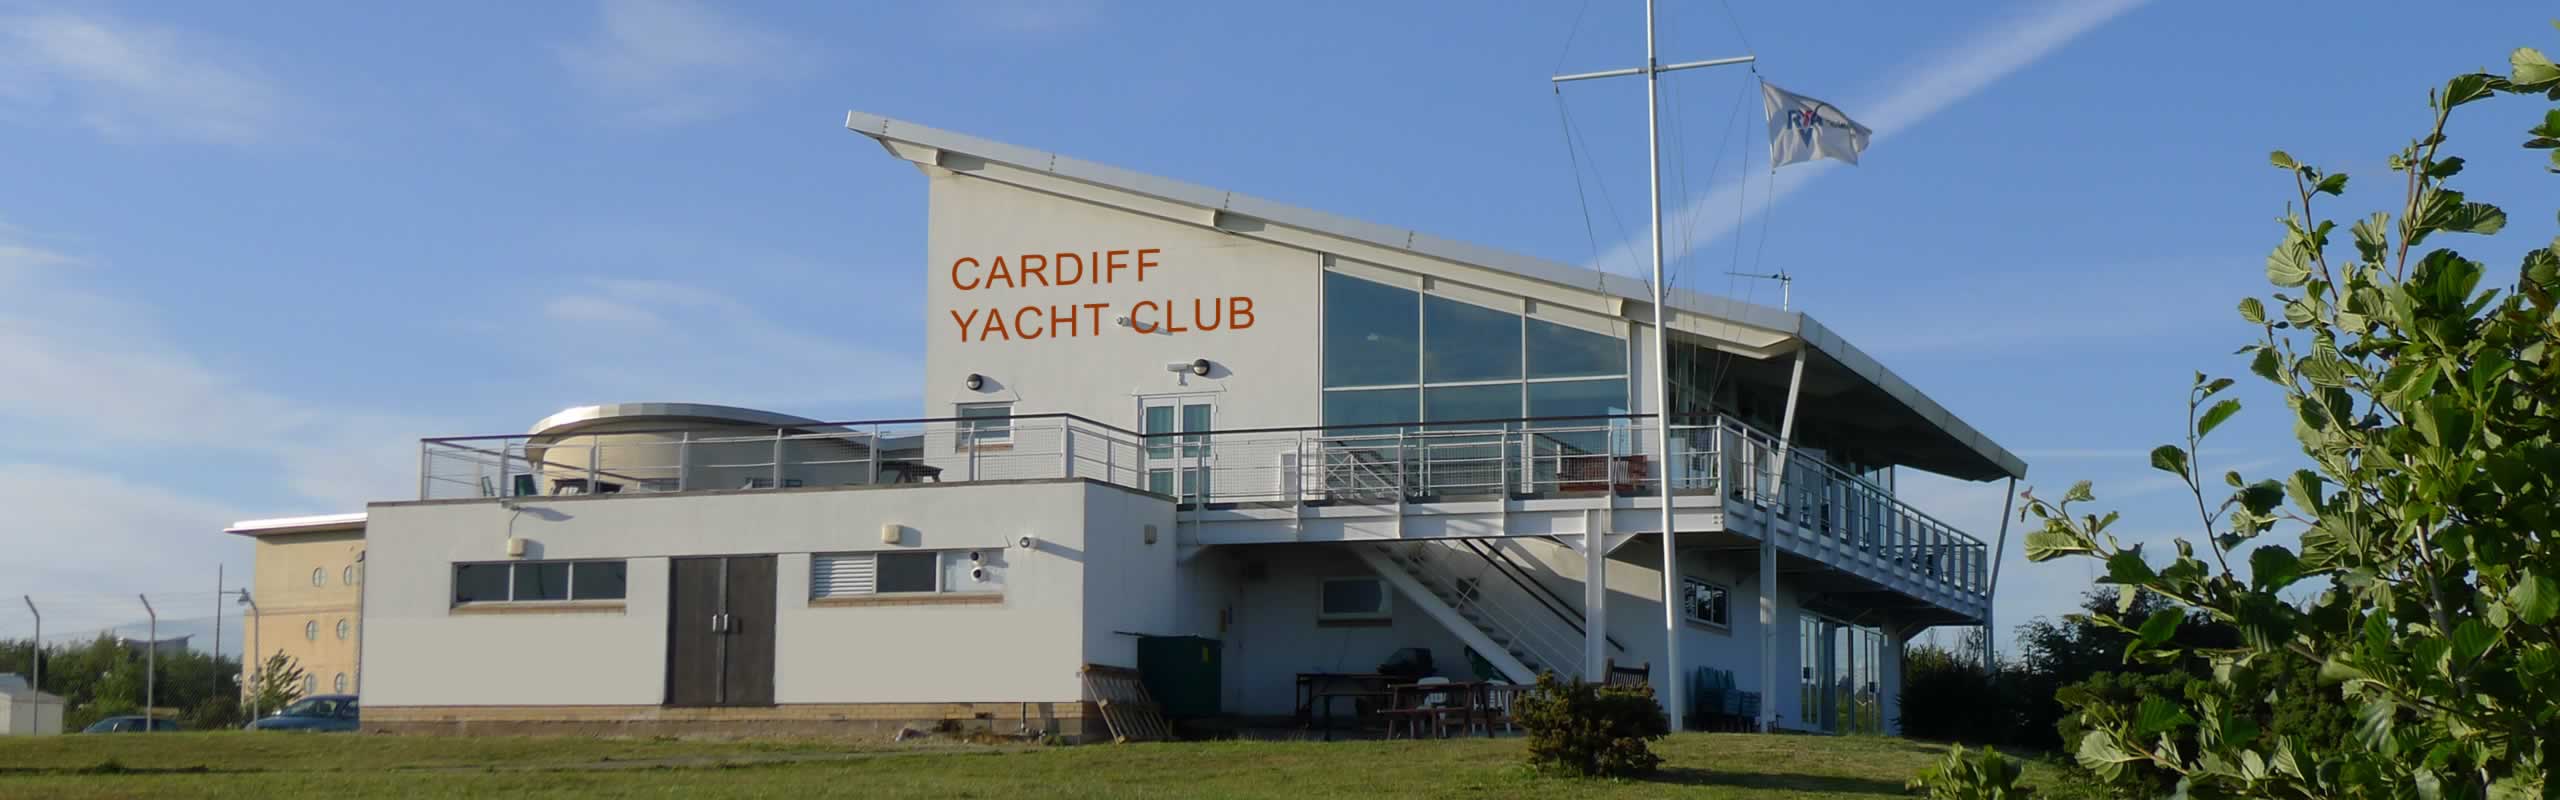 cardiff bay yacht club webcam